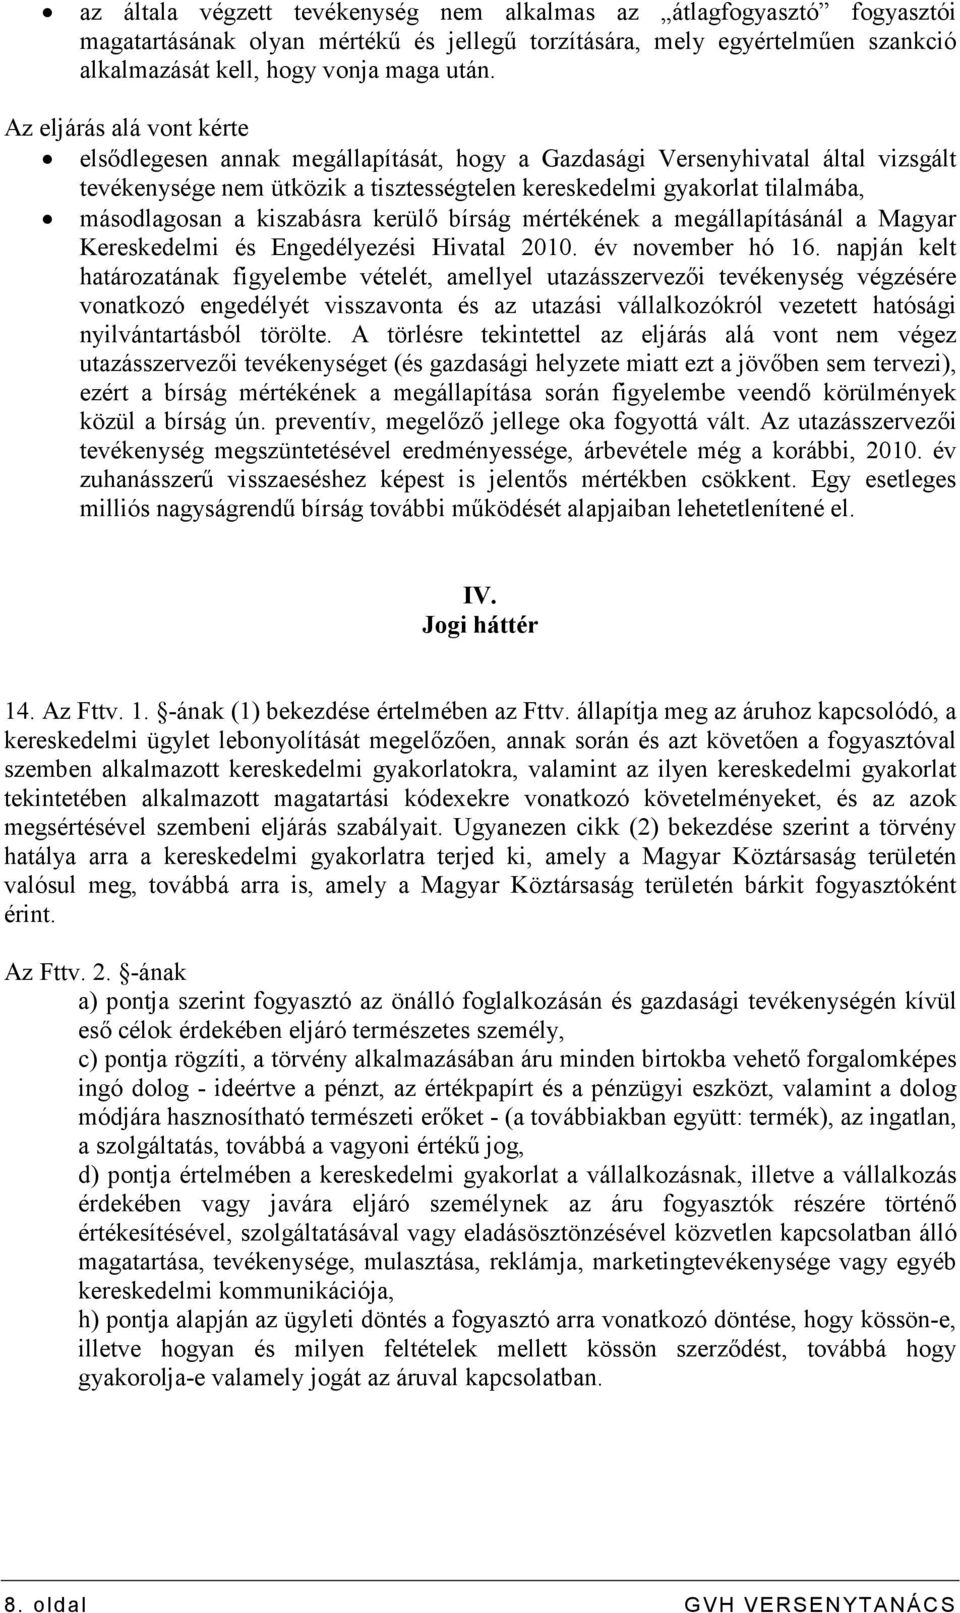 kiszabásra kerülı bírság mértékének a megállapításánál a Magyar Kereskedelmi és Engedélyezési Hivatal 2010. év november hó 16.